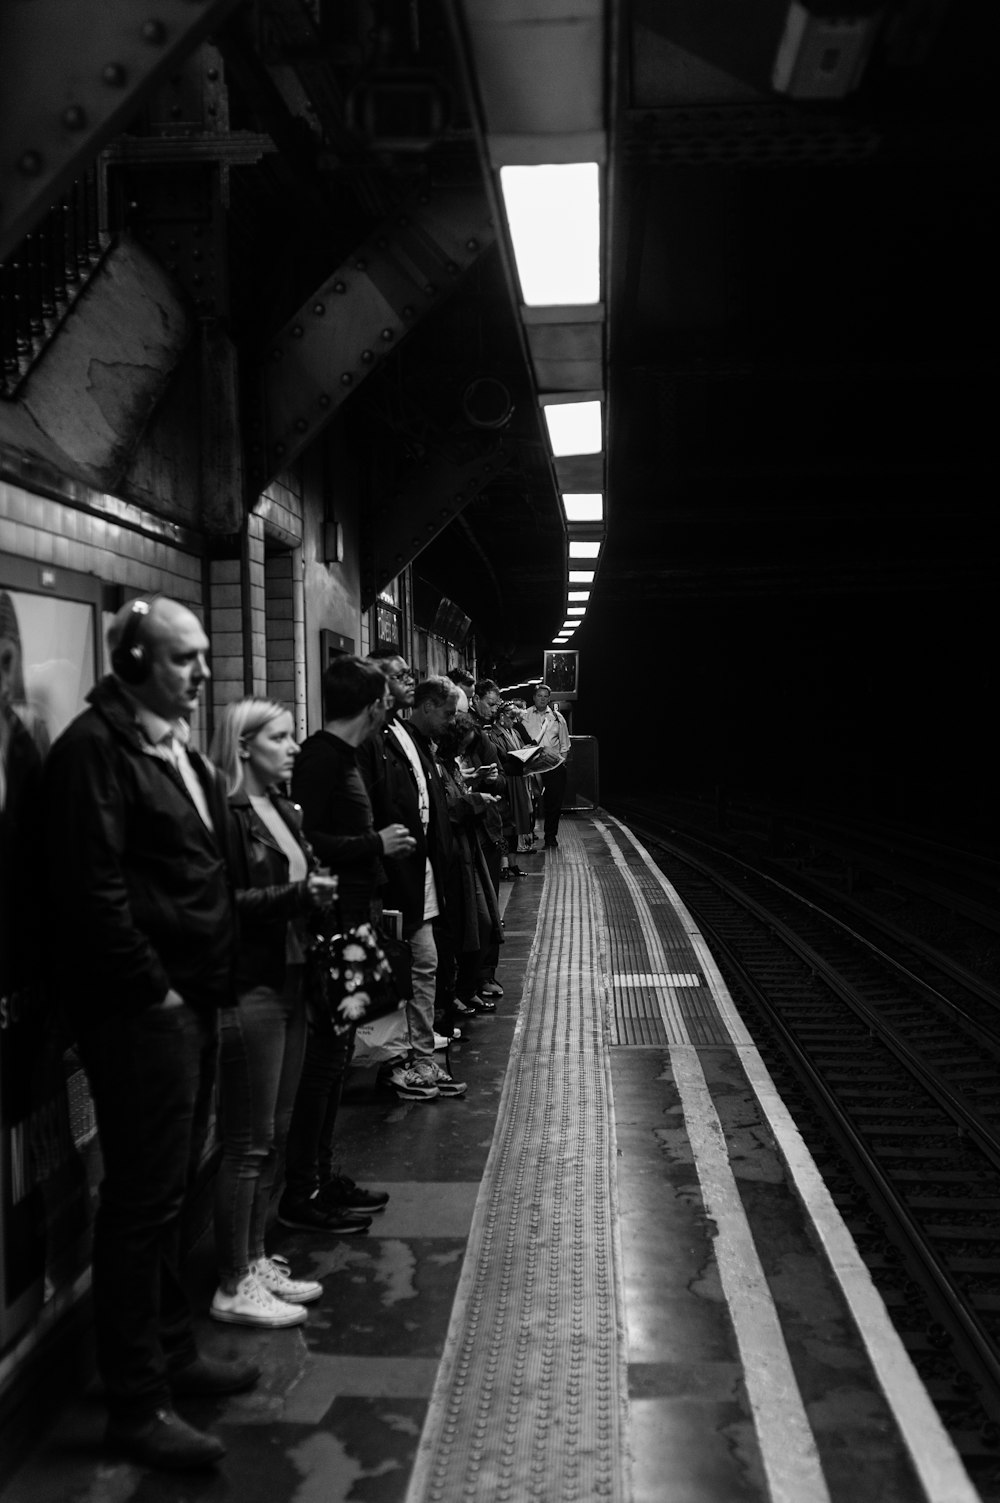 greyscale photography of people standing beside train railway